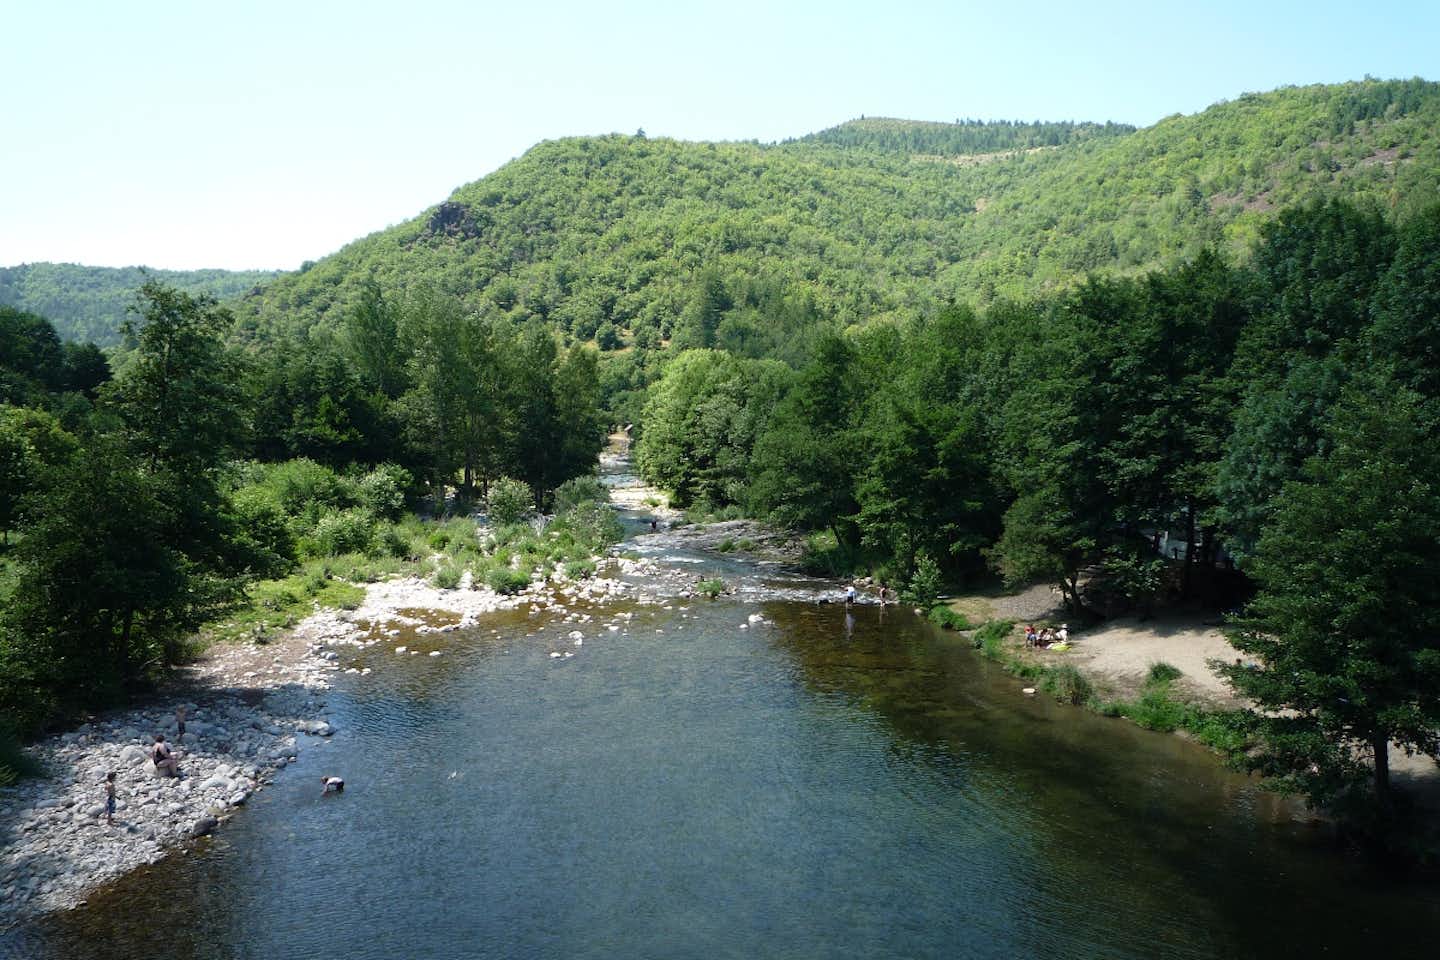 Camping Chantemerle - Tarn Fluss am Campingplatz